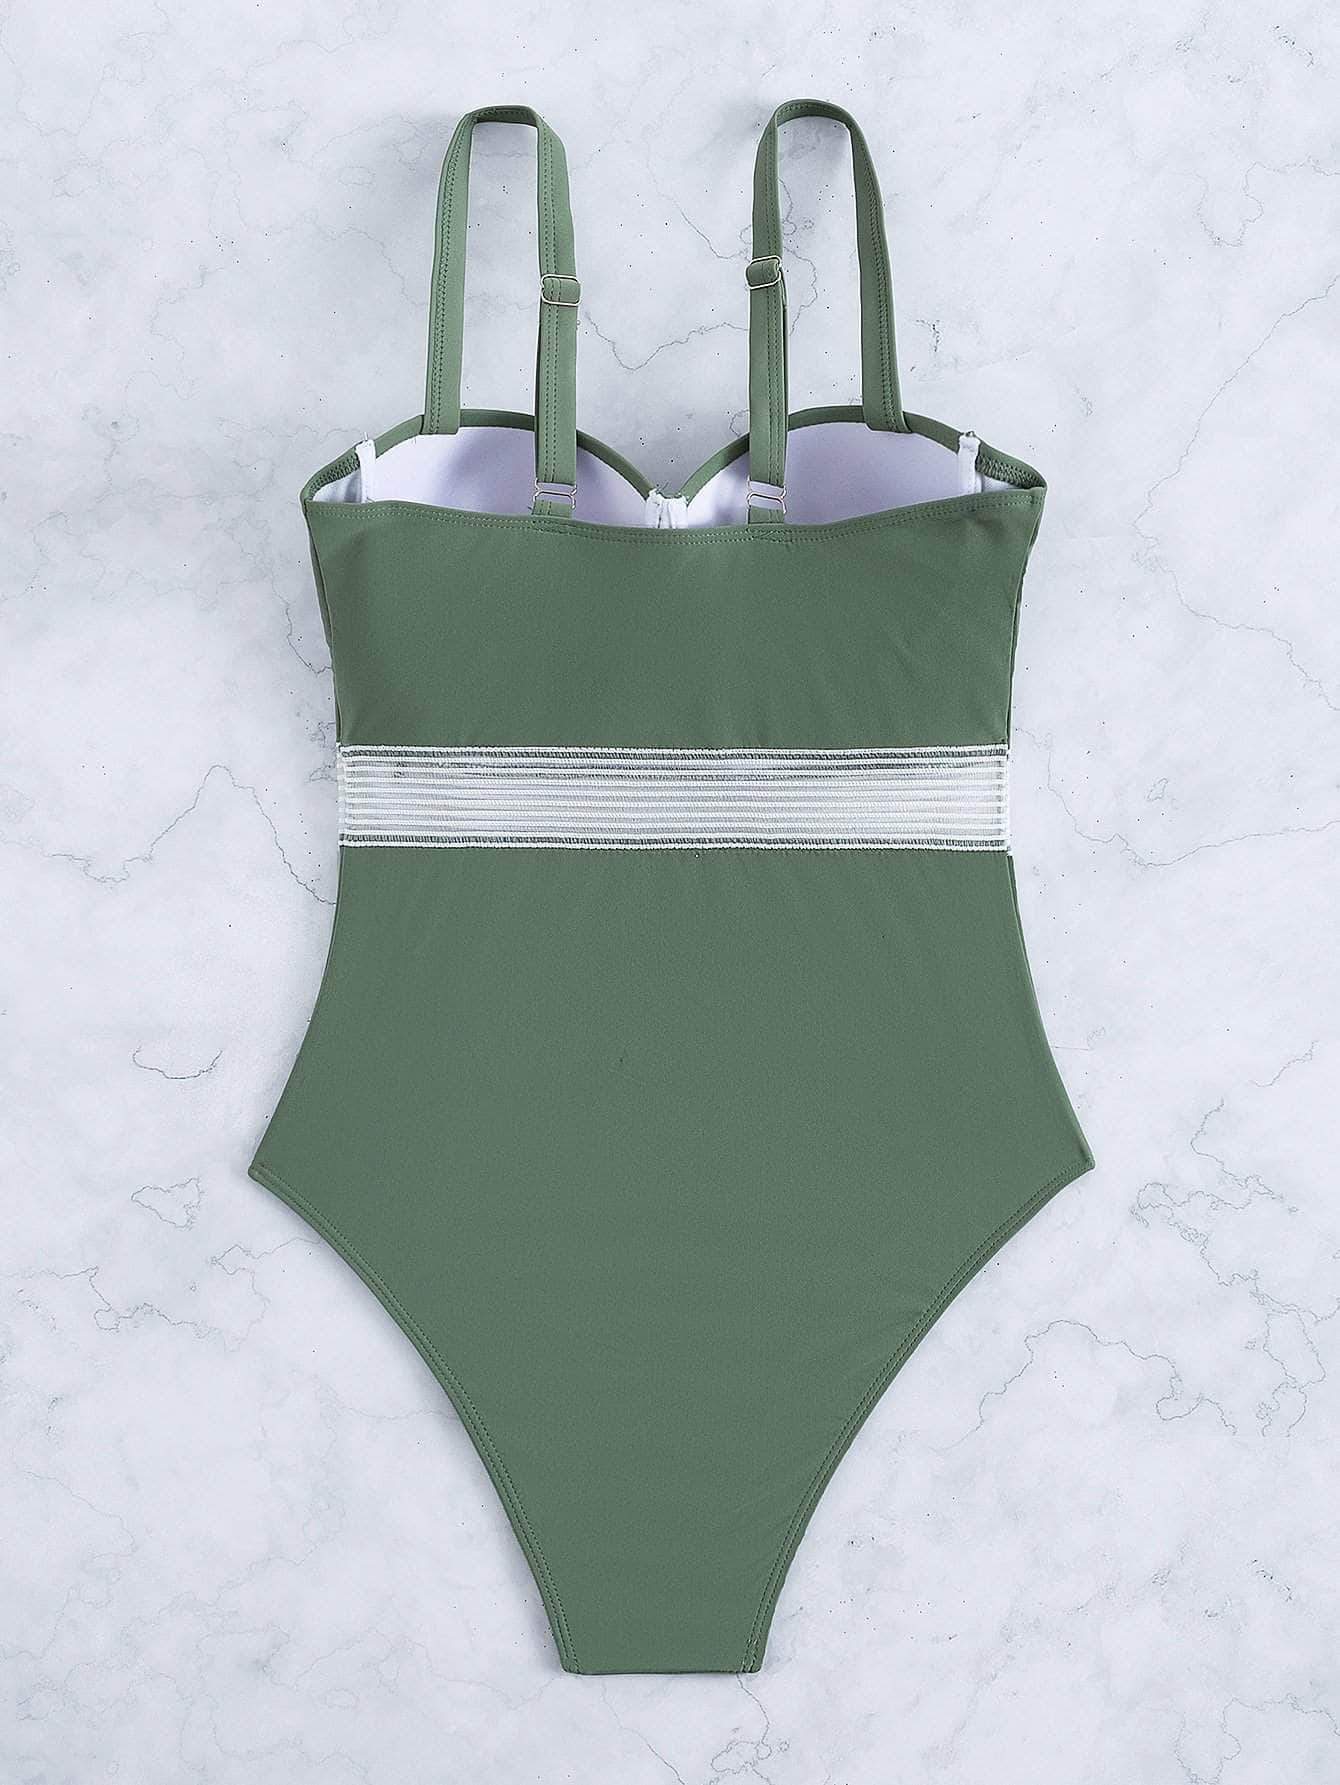 Verde militar / L Vestido de baño una pieza push up simple con encaje en contraste